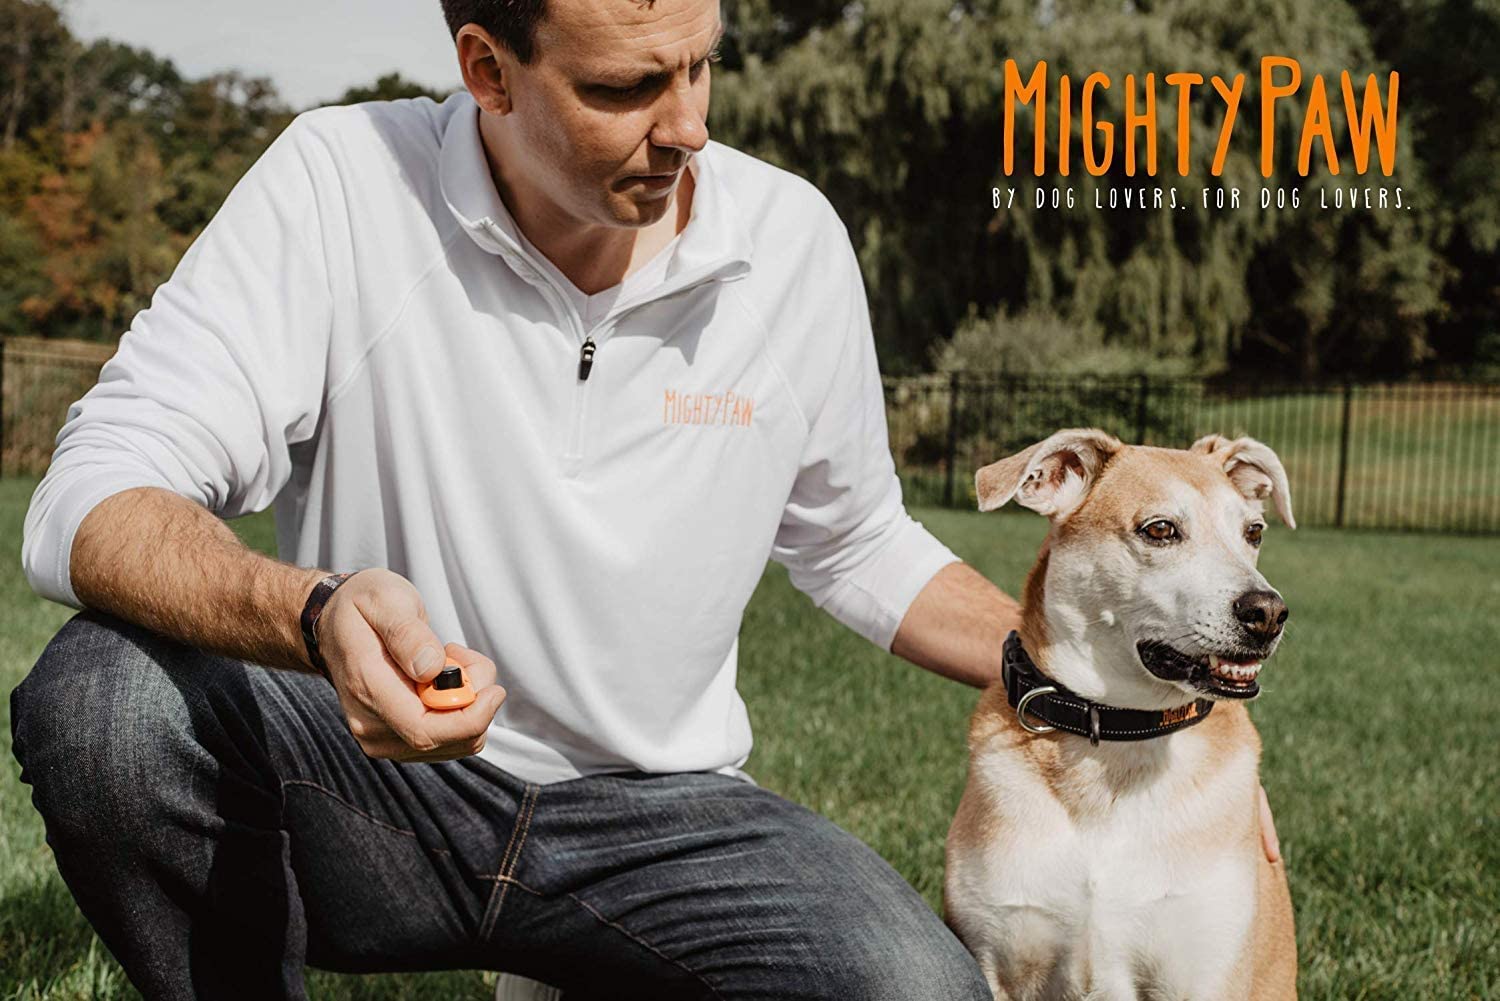  Mighty Paw Entrenamiento del Perro de Clicker, 2 Opciones de fijación, Clip de la Correa retráctil + Wrist Lanyard Naranja 